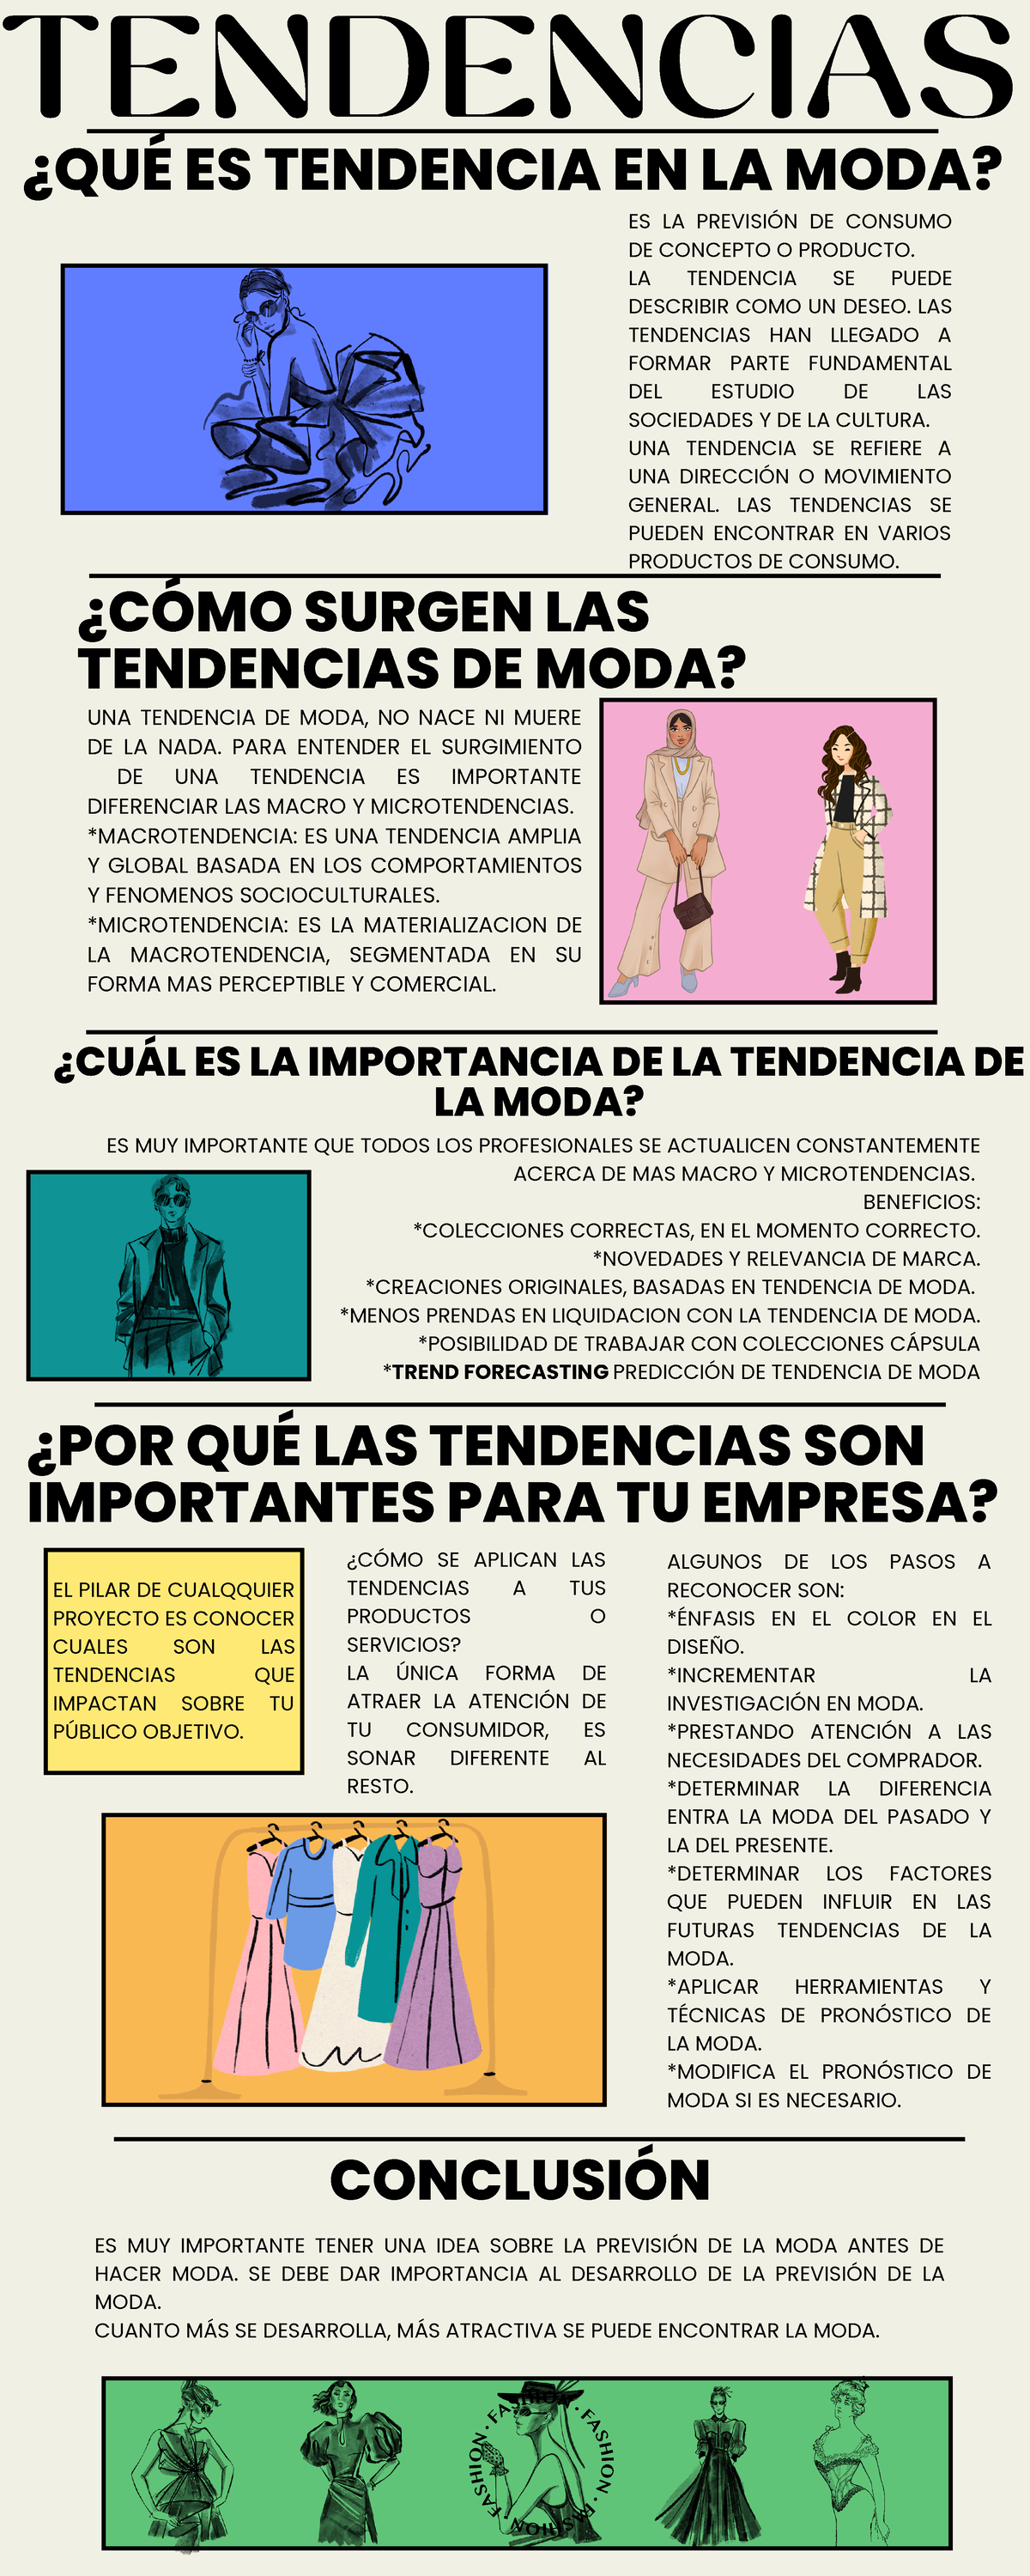 Tendencias - Infografía de la tendencia de moda - TENDENCIAS EL